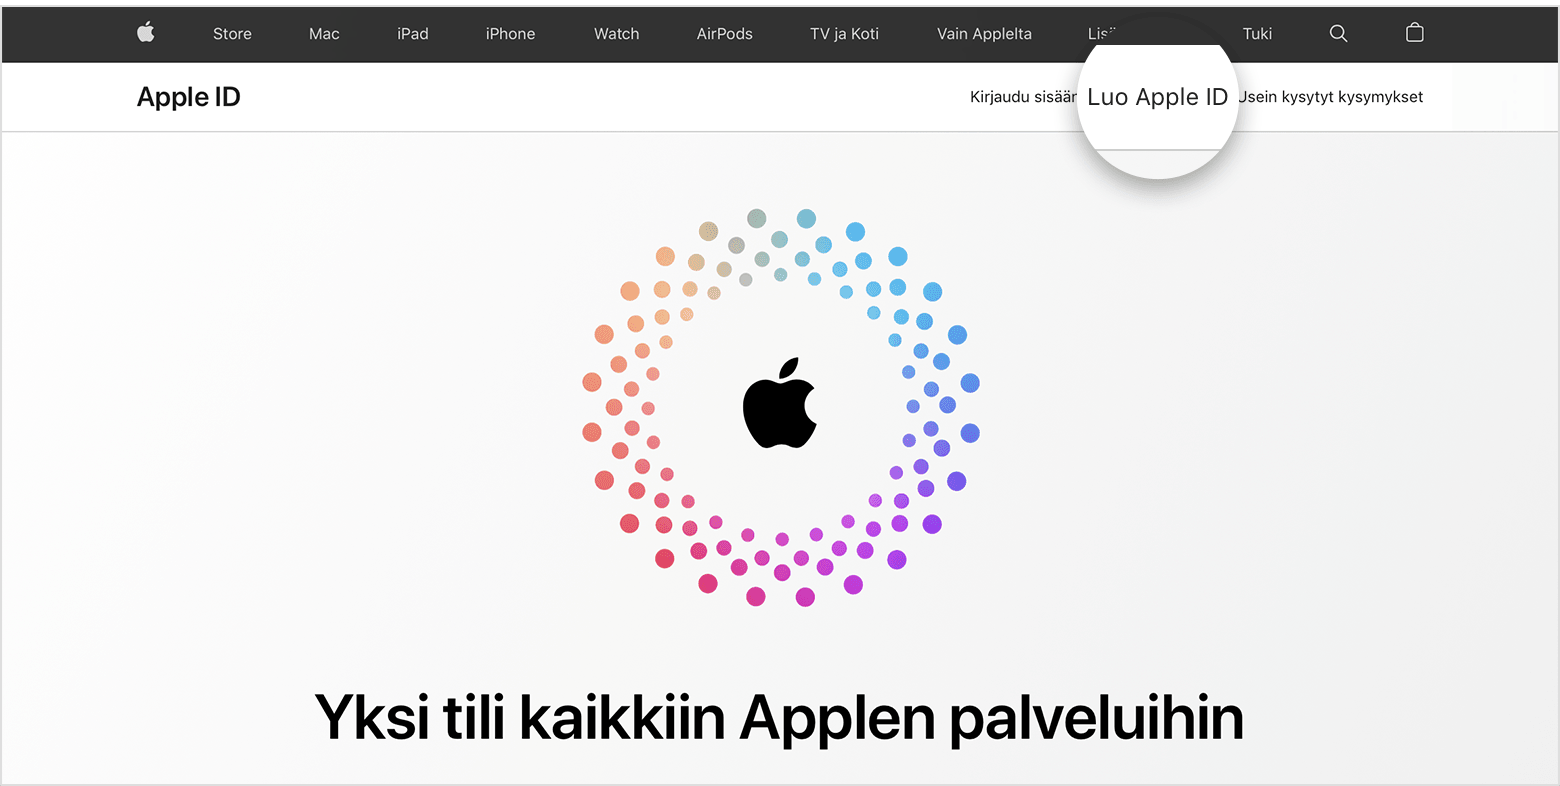 Näyttökuva appleid.apple.com-sivustosta, jolla näkyy näytön keskellä Applen logo ja sitä ympäröivät samankeskiset värilliset ympyrät.